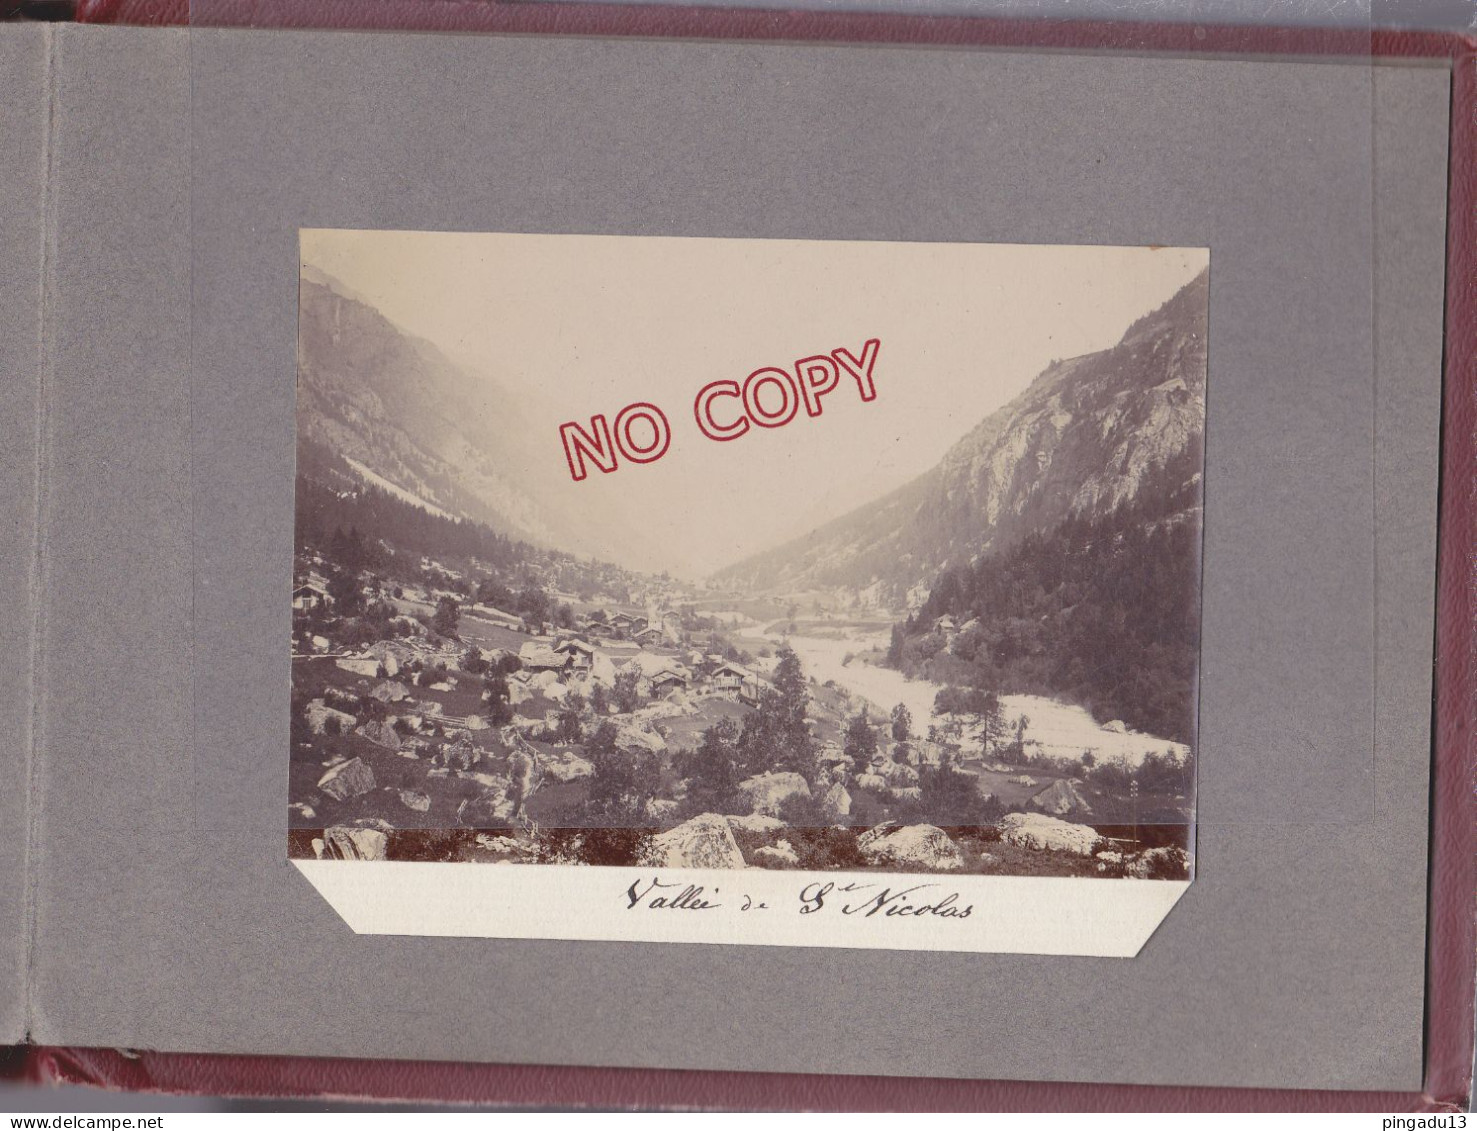 Album * 1903 Chamonix Mont-Blanc Mer de Glace Argentières Evian Suisse Zermatt Lausanne ... Fleury Somme 20 photos